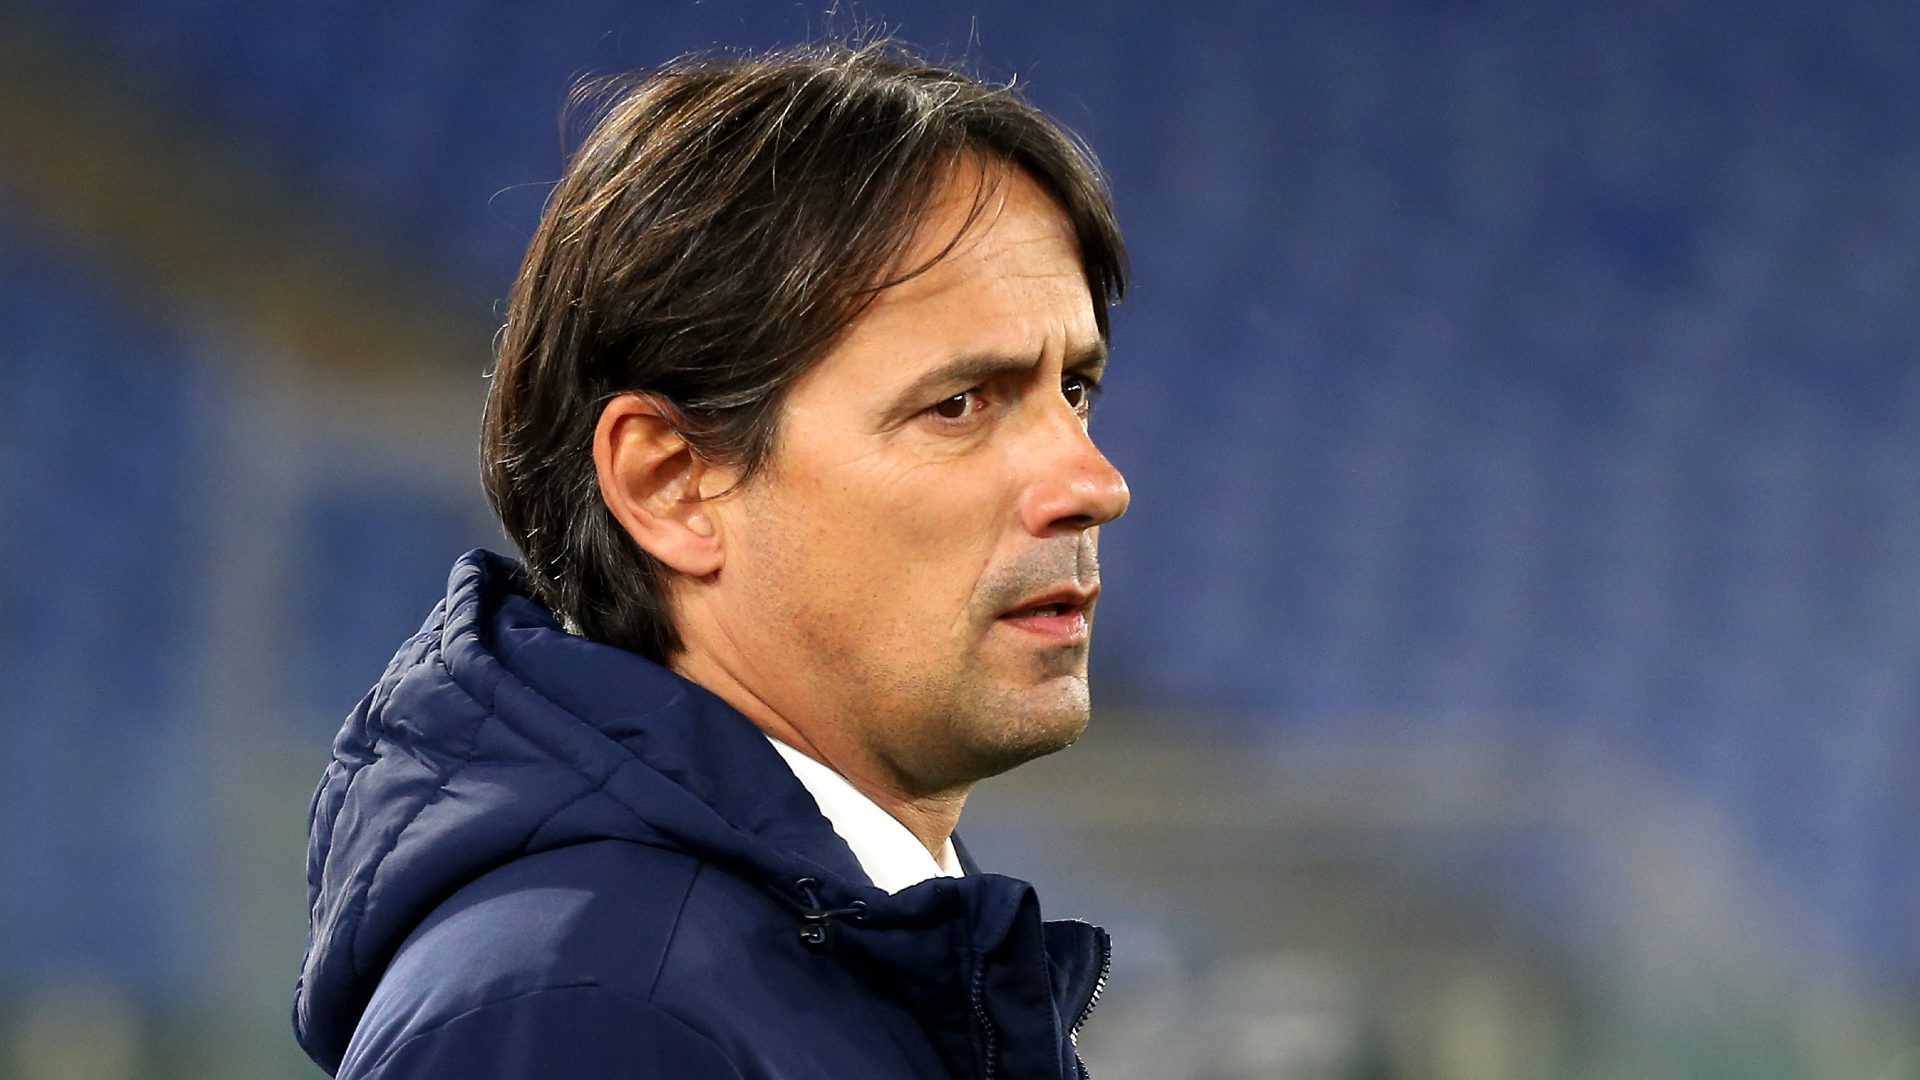 OFFICIEL : Inzaghi nouvel entraîneur de l'Inter Milan